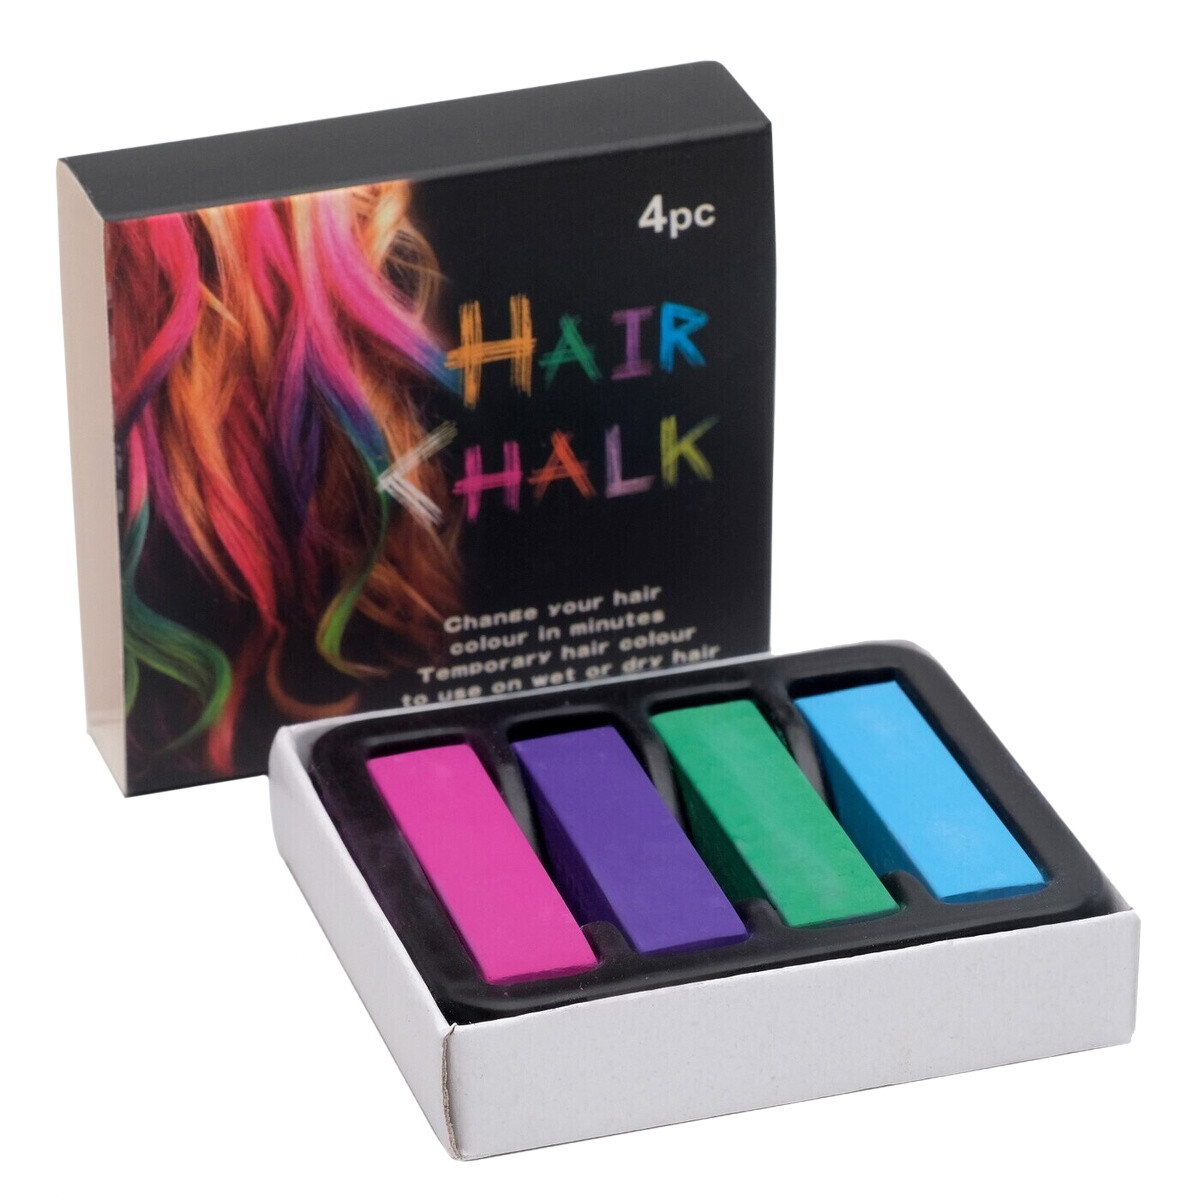 Цветные мелки для волос HairChalkin, набор 4 штук ные мелки erich krause для доски 6 штук